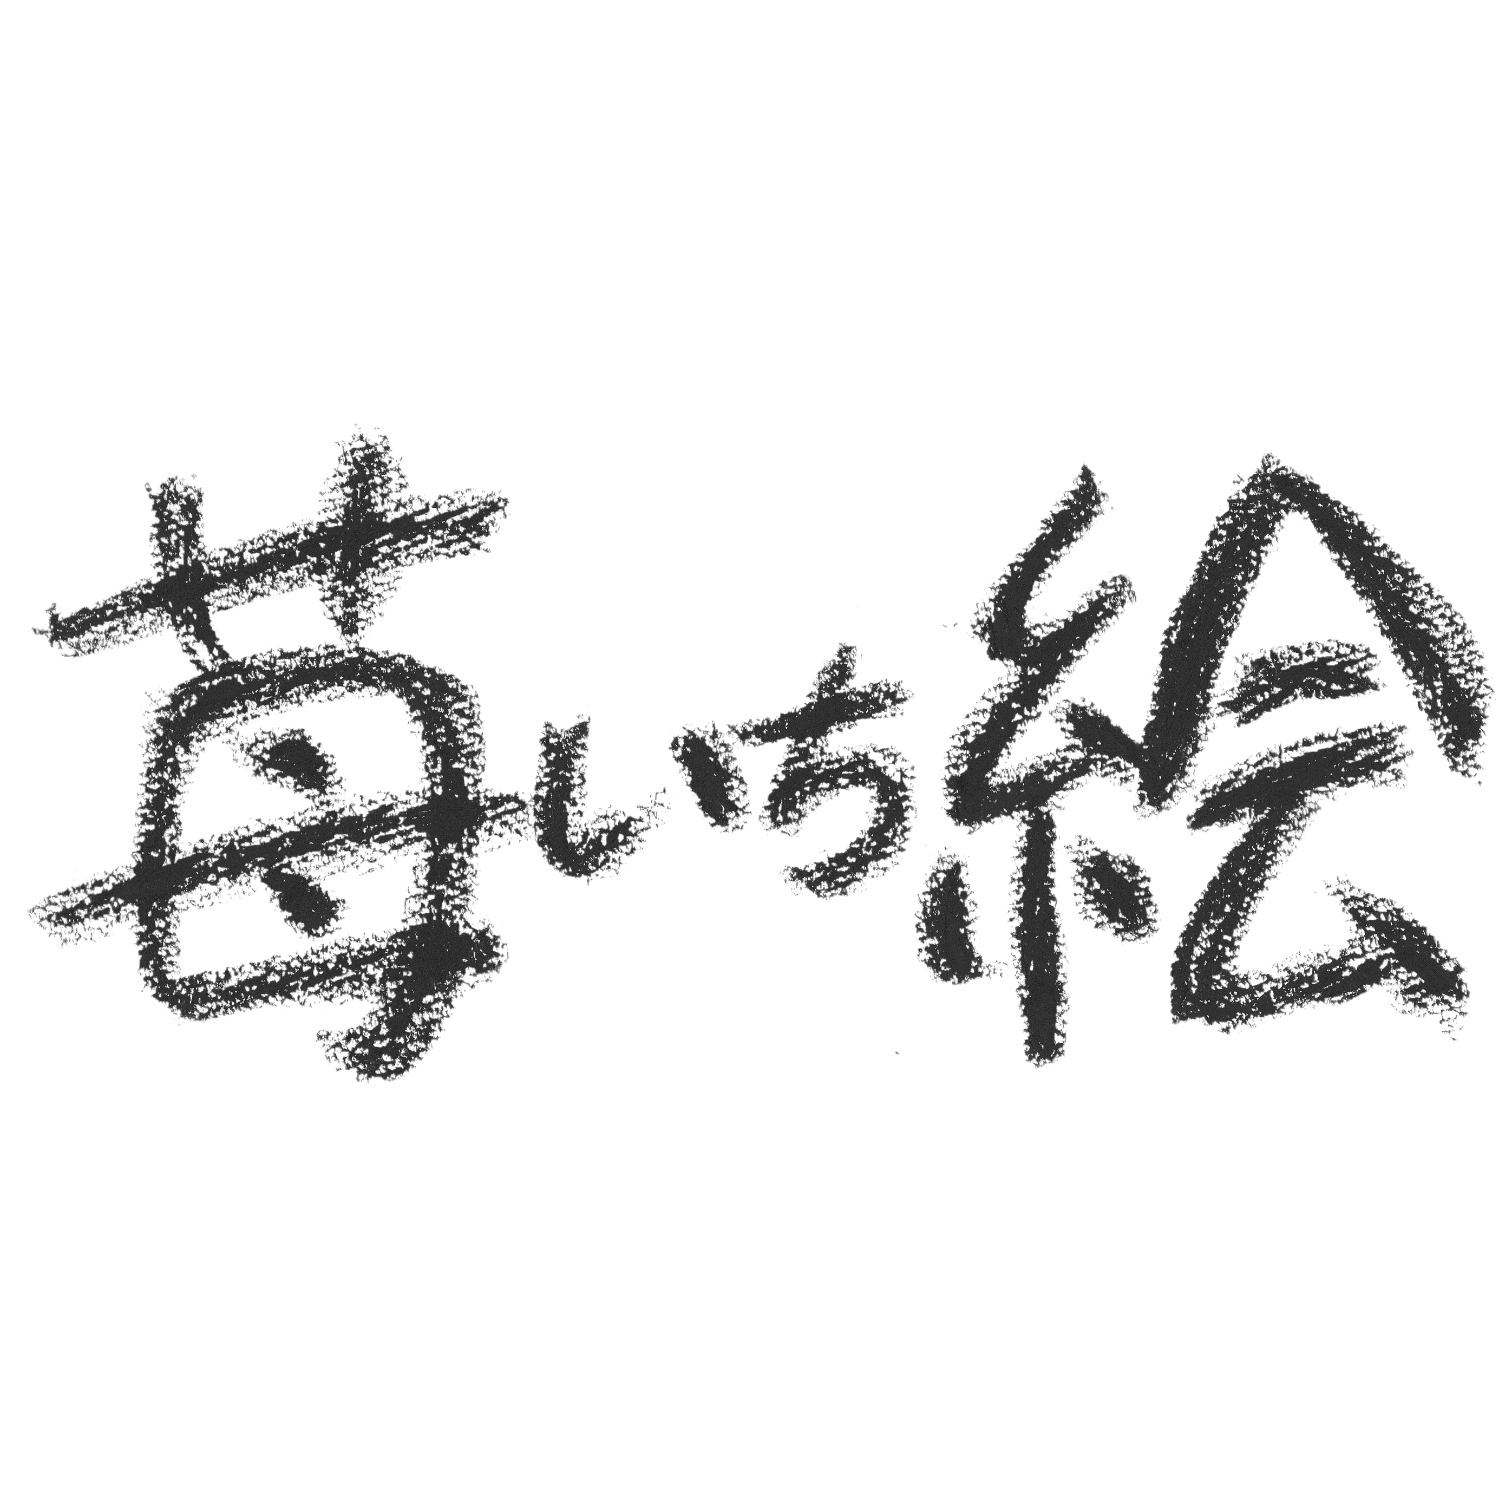 Ichi5ichie_handwriting：Not for sale